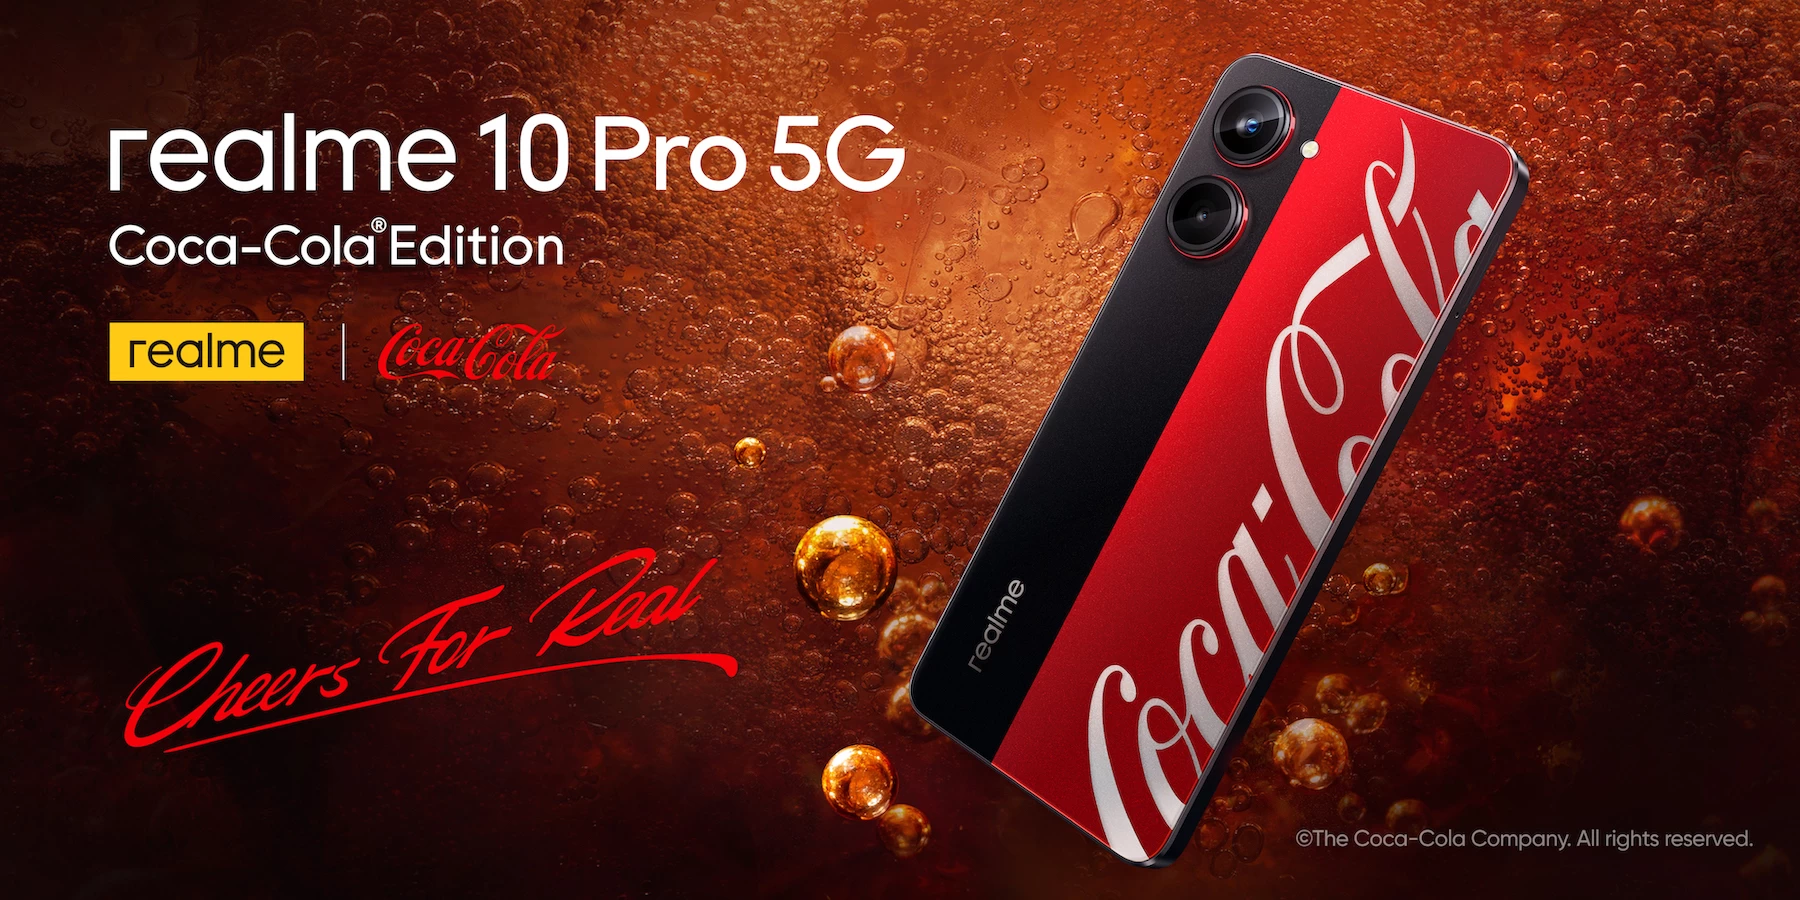 1เปิดตัว realme 10 Pro 5G Coca Cola Edition สำเนา | Coca-Cola Edition | รวมข้อมูล realme 10 Pro 5G Coca-Cola Edition รุ่นพิเศษสายโค๊ก เปิดราคา 11,999 บาท